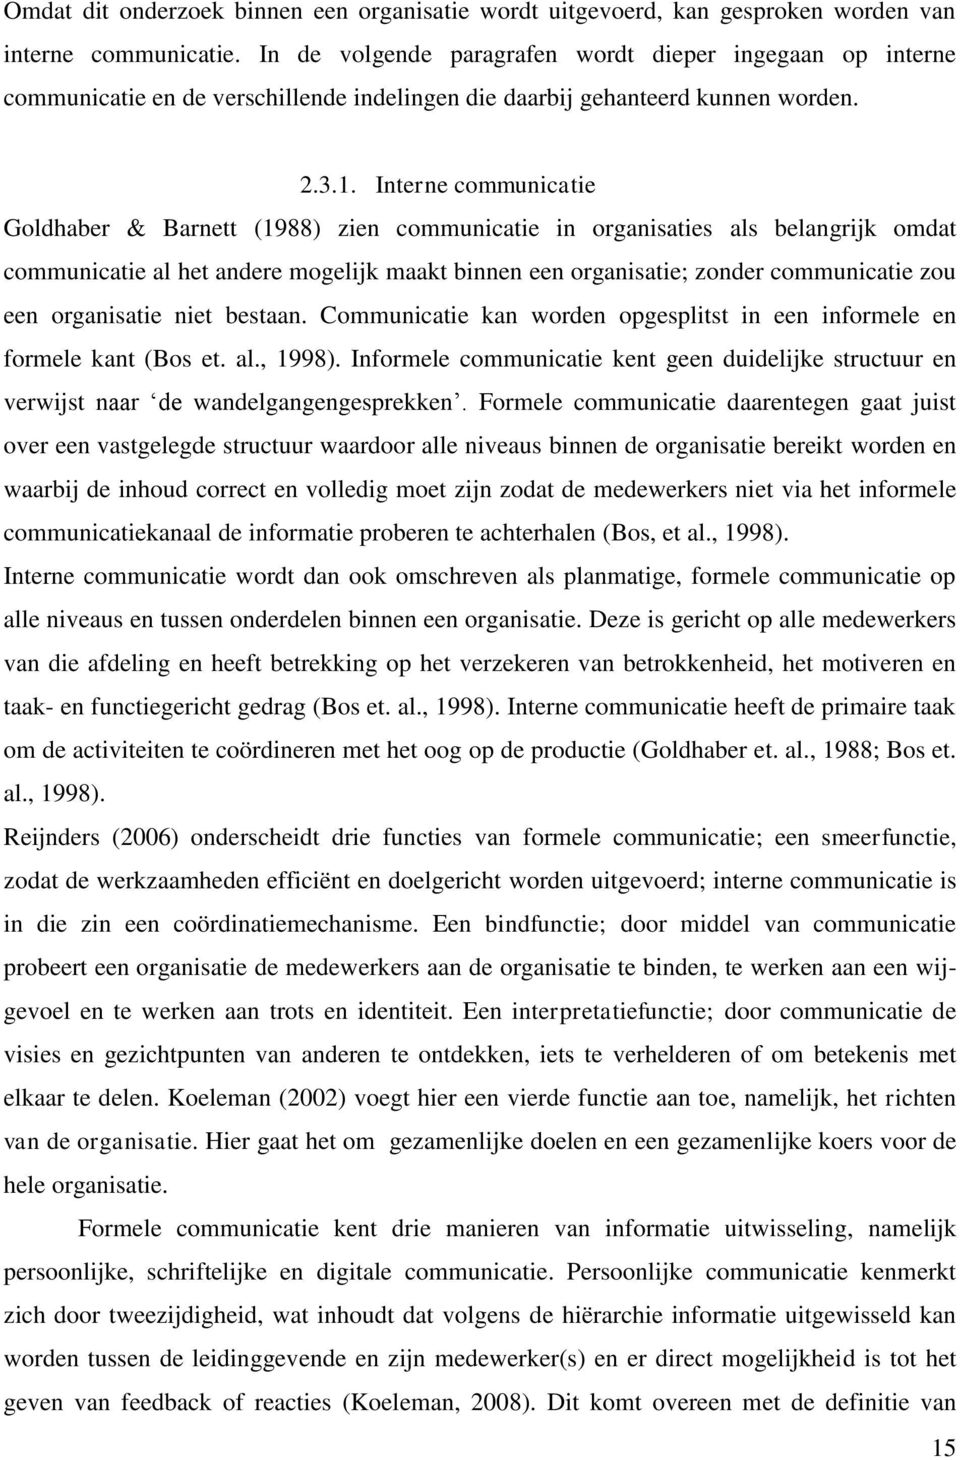 Interne communicatie Goldhaber & Barnett (1988) zien communicatie in organisaties als belangrijk omdat communicatie al het andere mogelijk maakt binnen een organisatie; zonder communicatie zou een